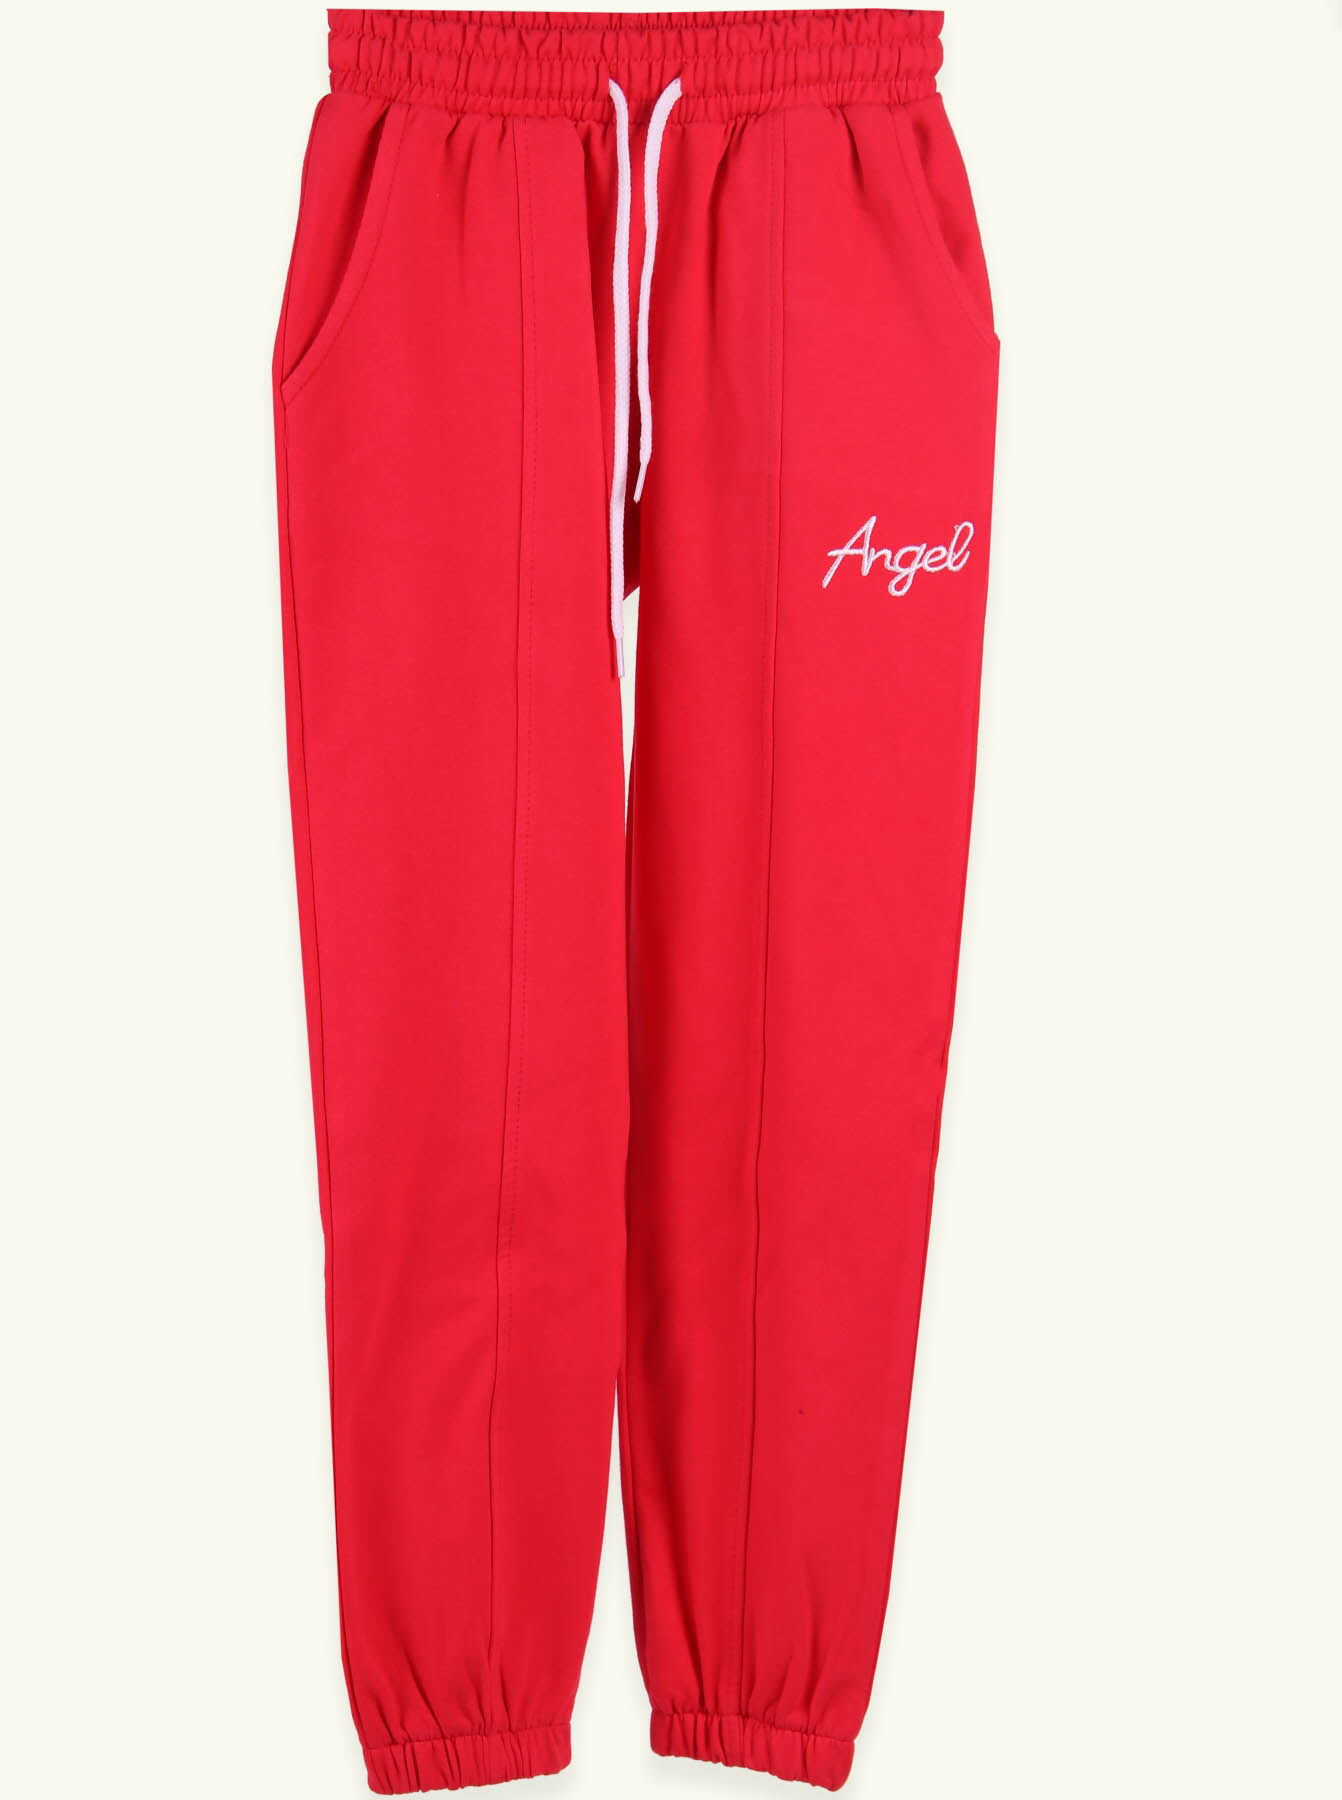 Спортивные штаны для девочки Breeze коралловые 15309 - цена